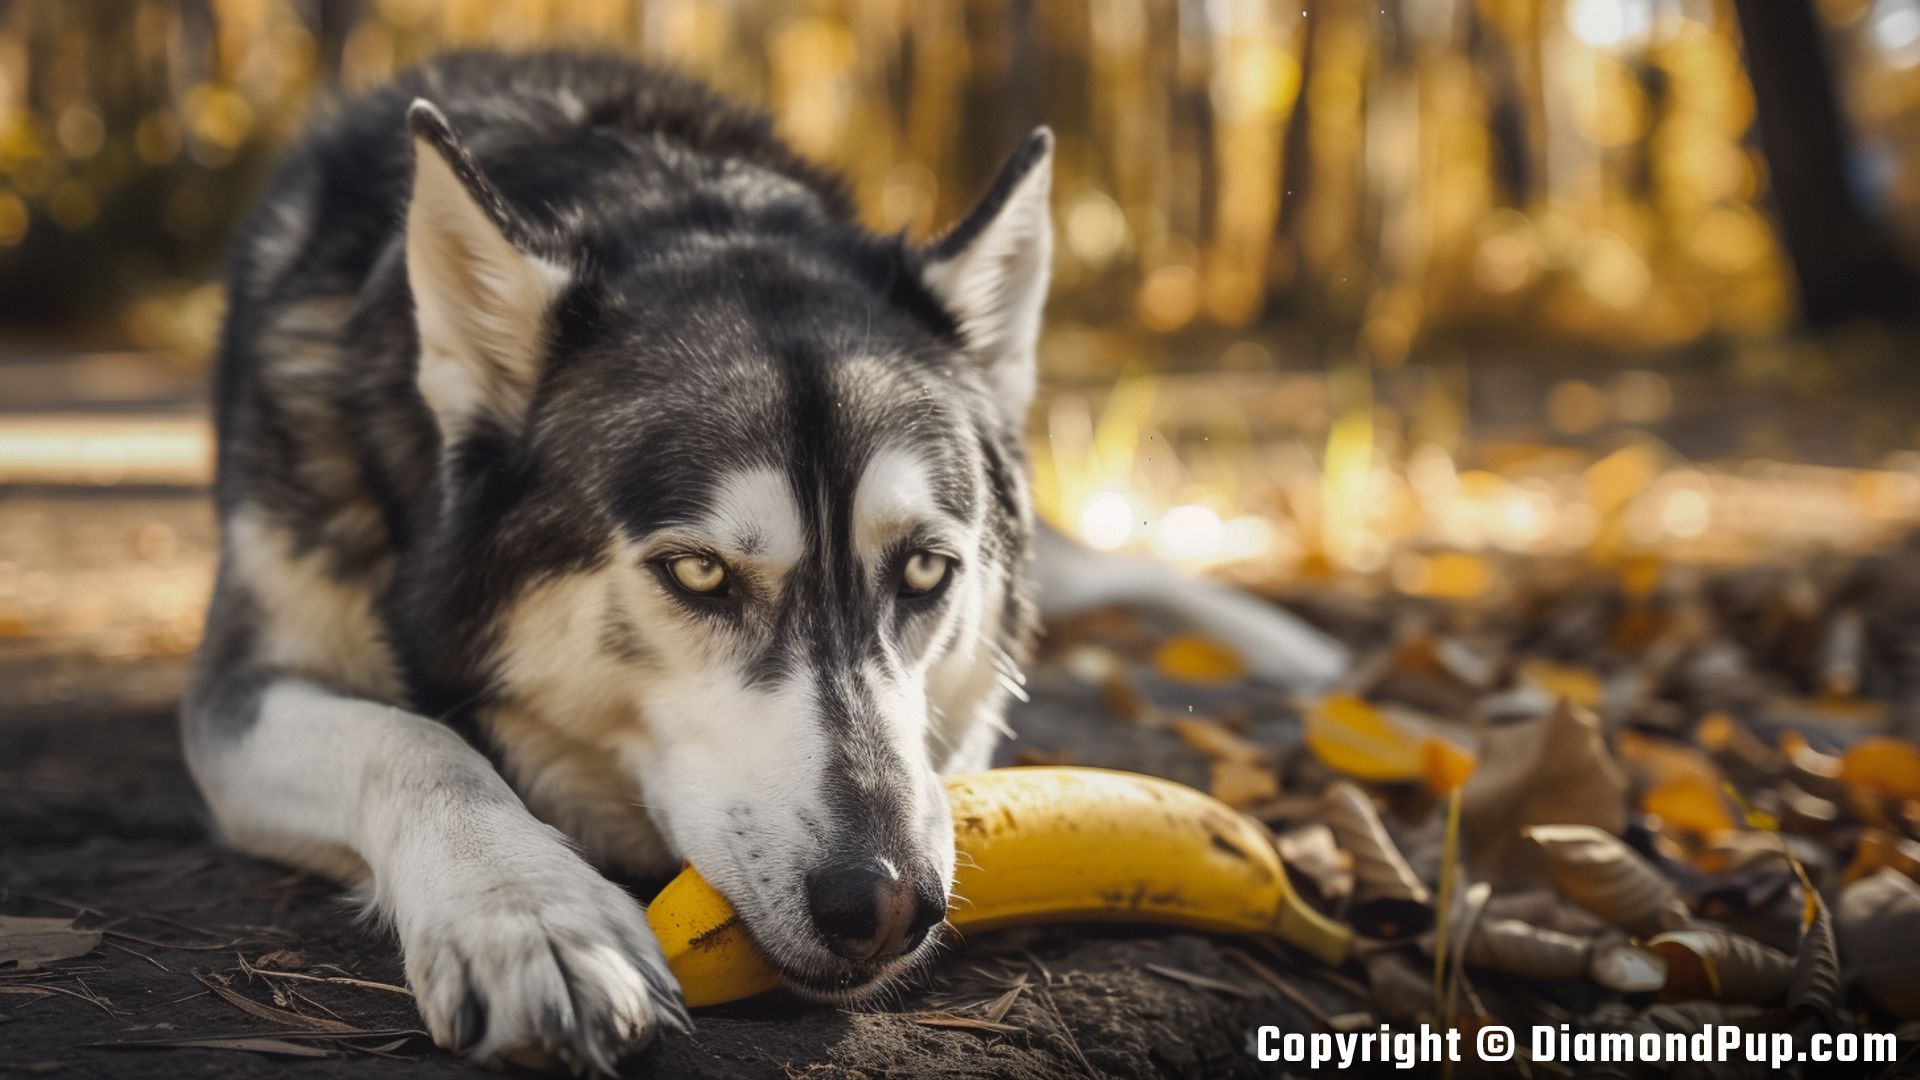 Photo of Husky Eating Banana